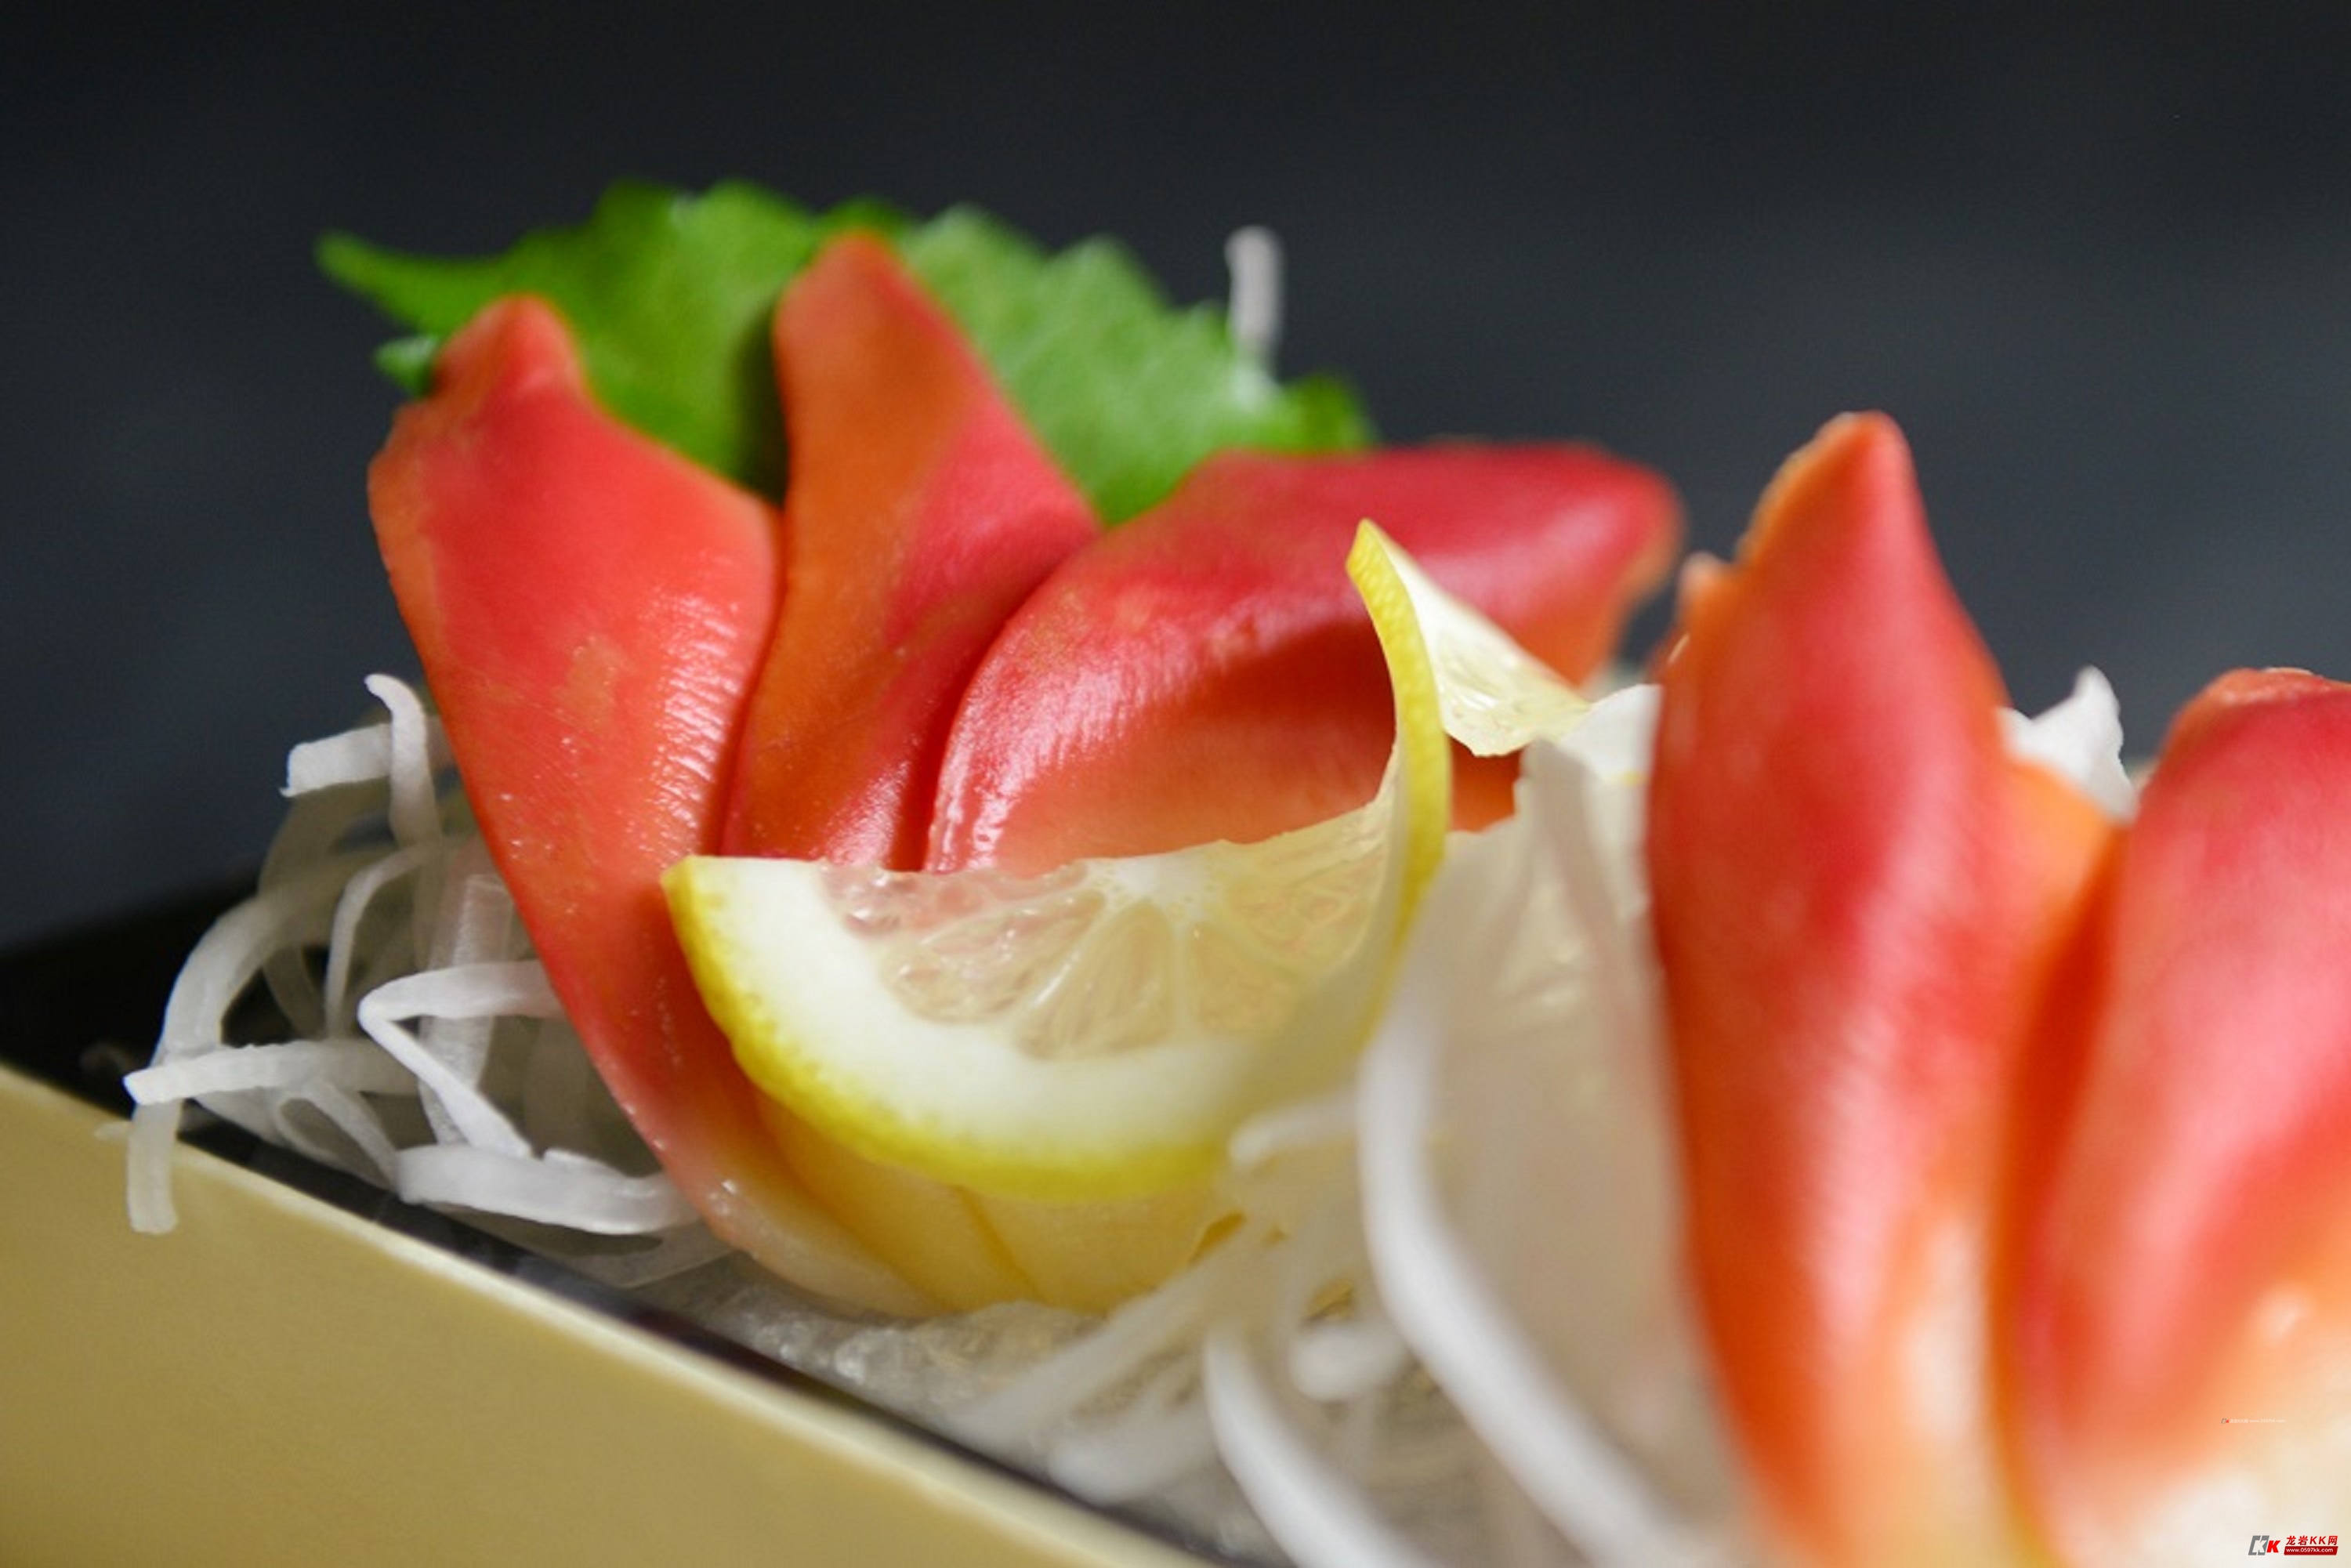 赤貝の旬や特徴とは？産地・美味しい食べ方など【寿司で人気】 | お食事ウェブマガジン「グルメノート」